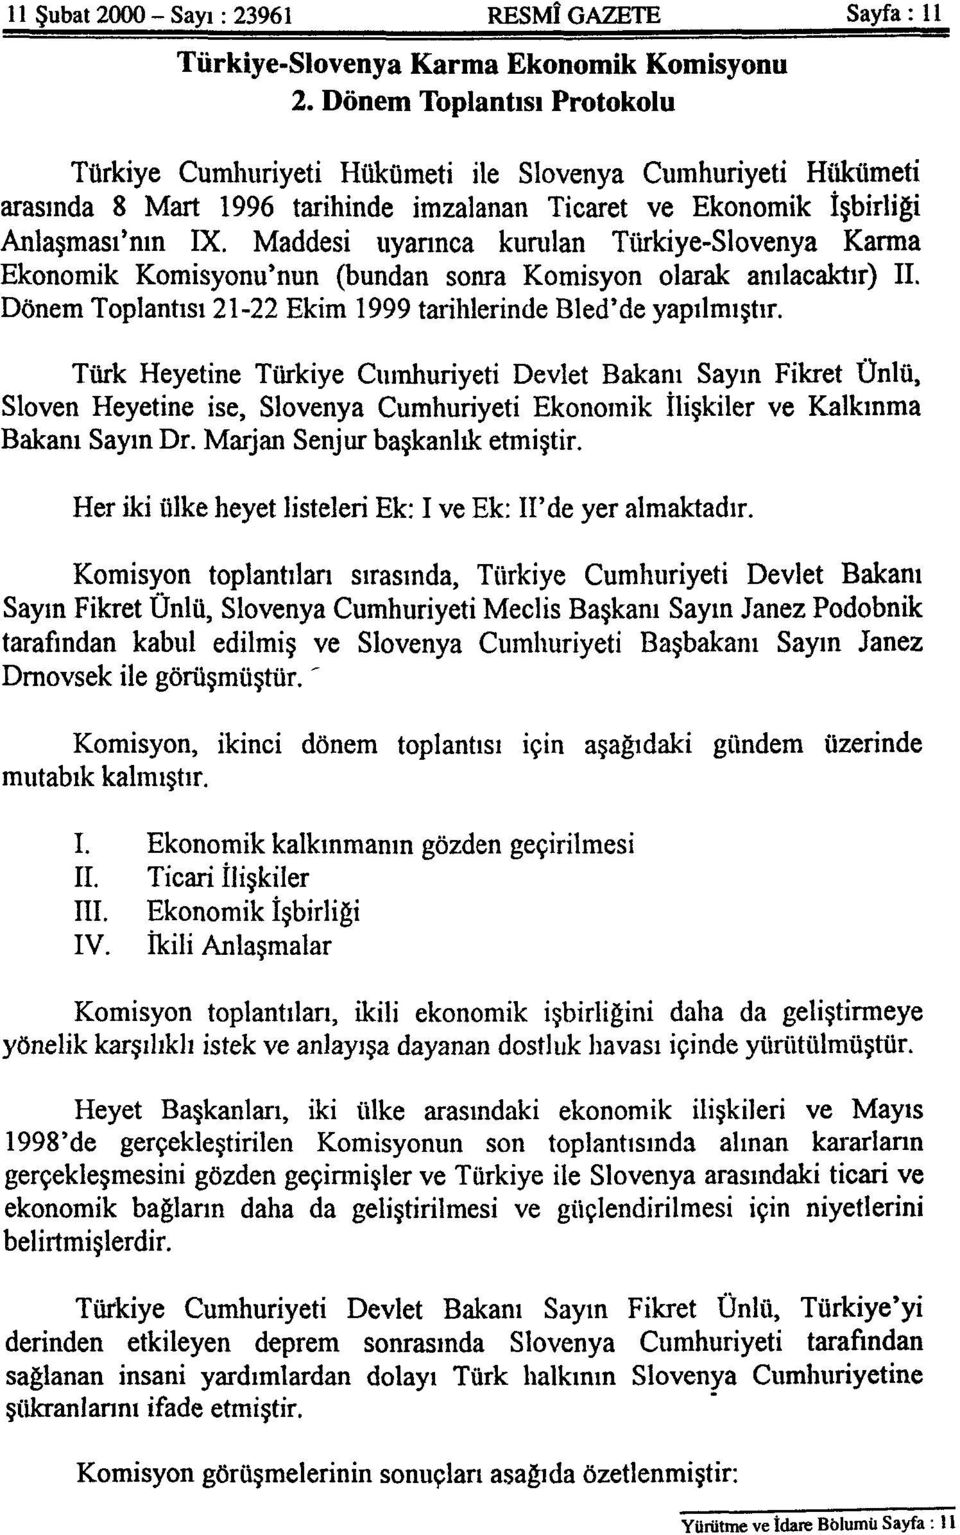 Maddesi uyarınca kurulan Türkiye-Slovenya Karma Ekonomik Komisyonu'nun (bundan sonra Komisyon olarak anılacaktır) II. Dönem Toplantısı 21-22 Ekim 1999 tarihlerinde Bled'de yapılmıştır.